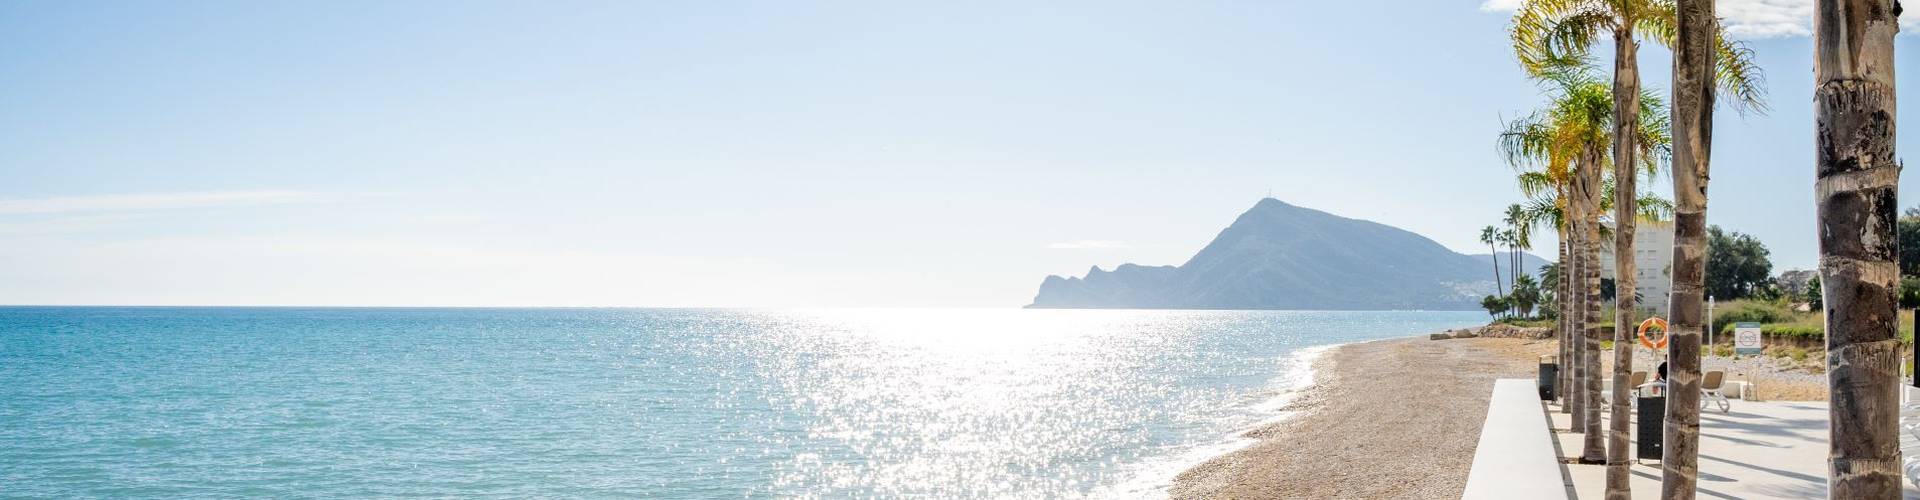 Cap Negret - Altea, Alicante - 